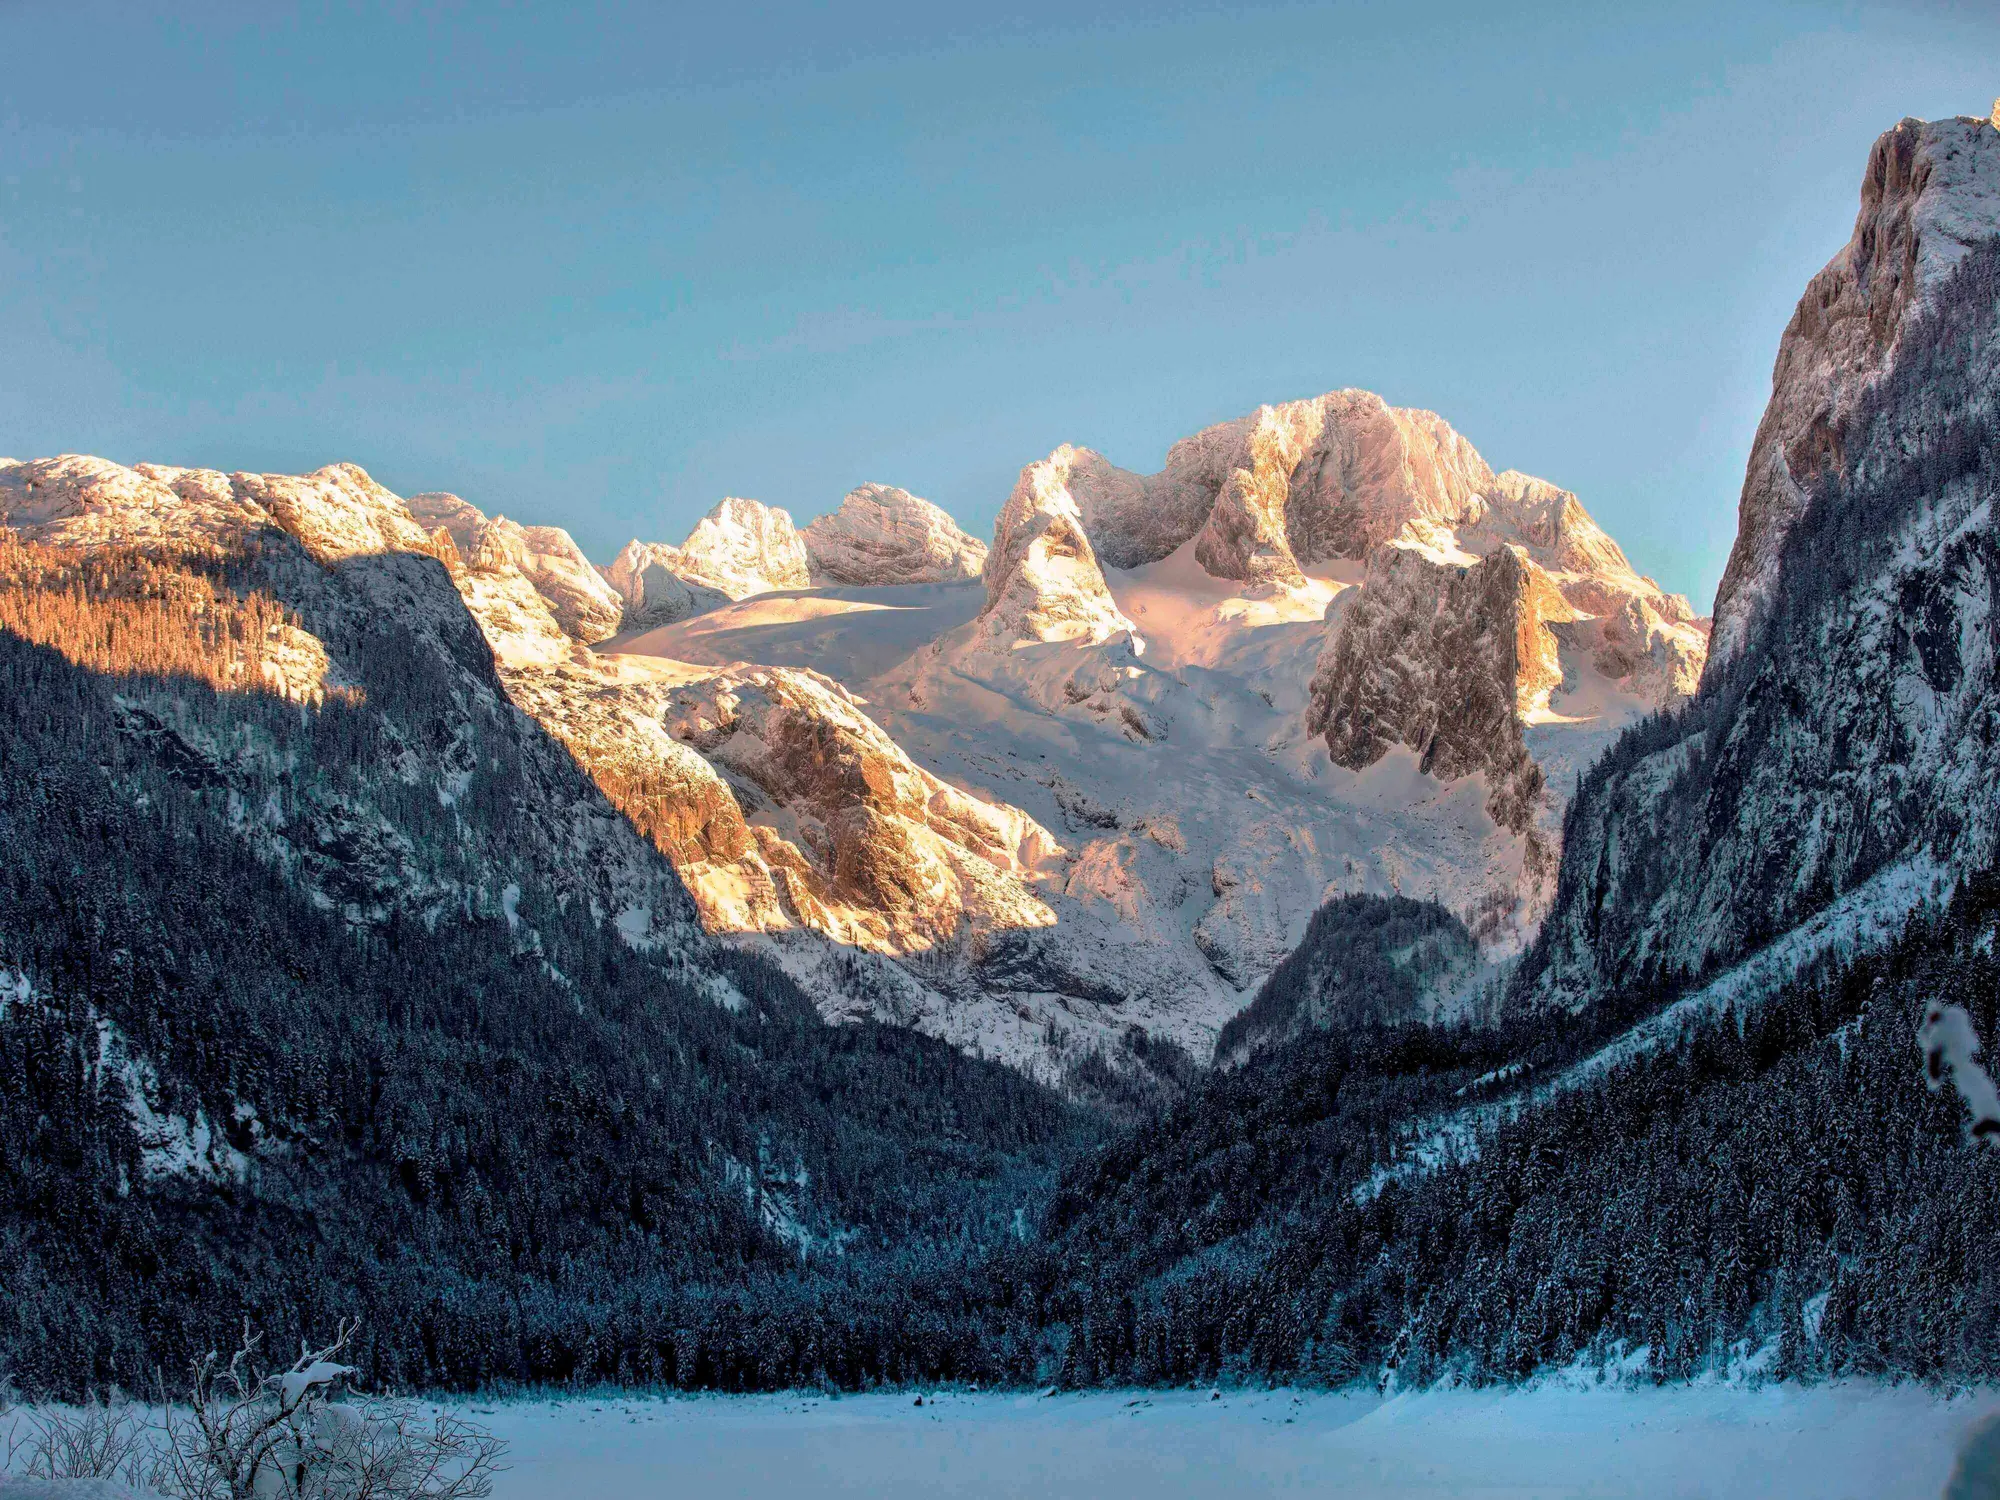 Vorderer Gosausee in winter with the Dachstein massif in the background (c) photo Österreich Werbung / Harald Eisenberger